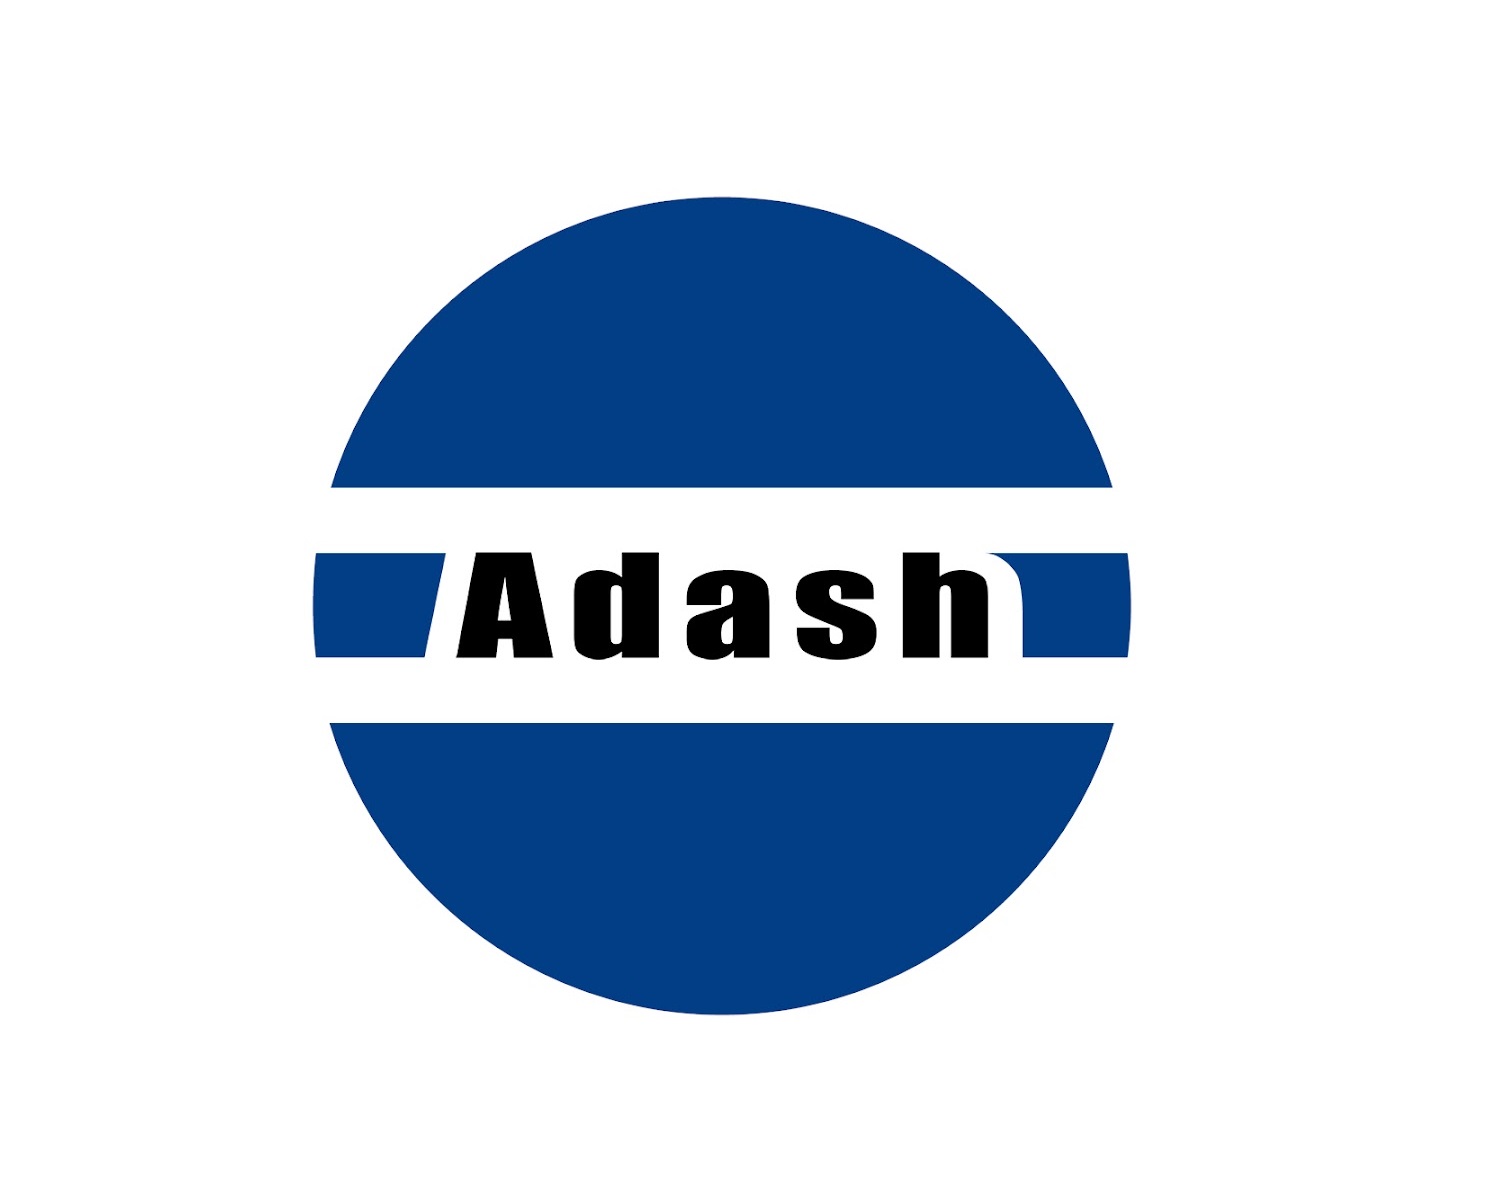 ADASH